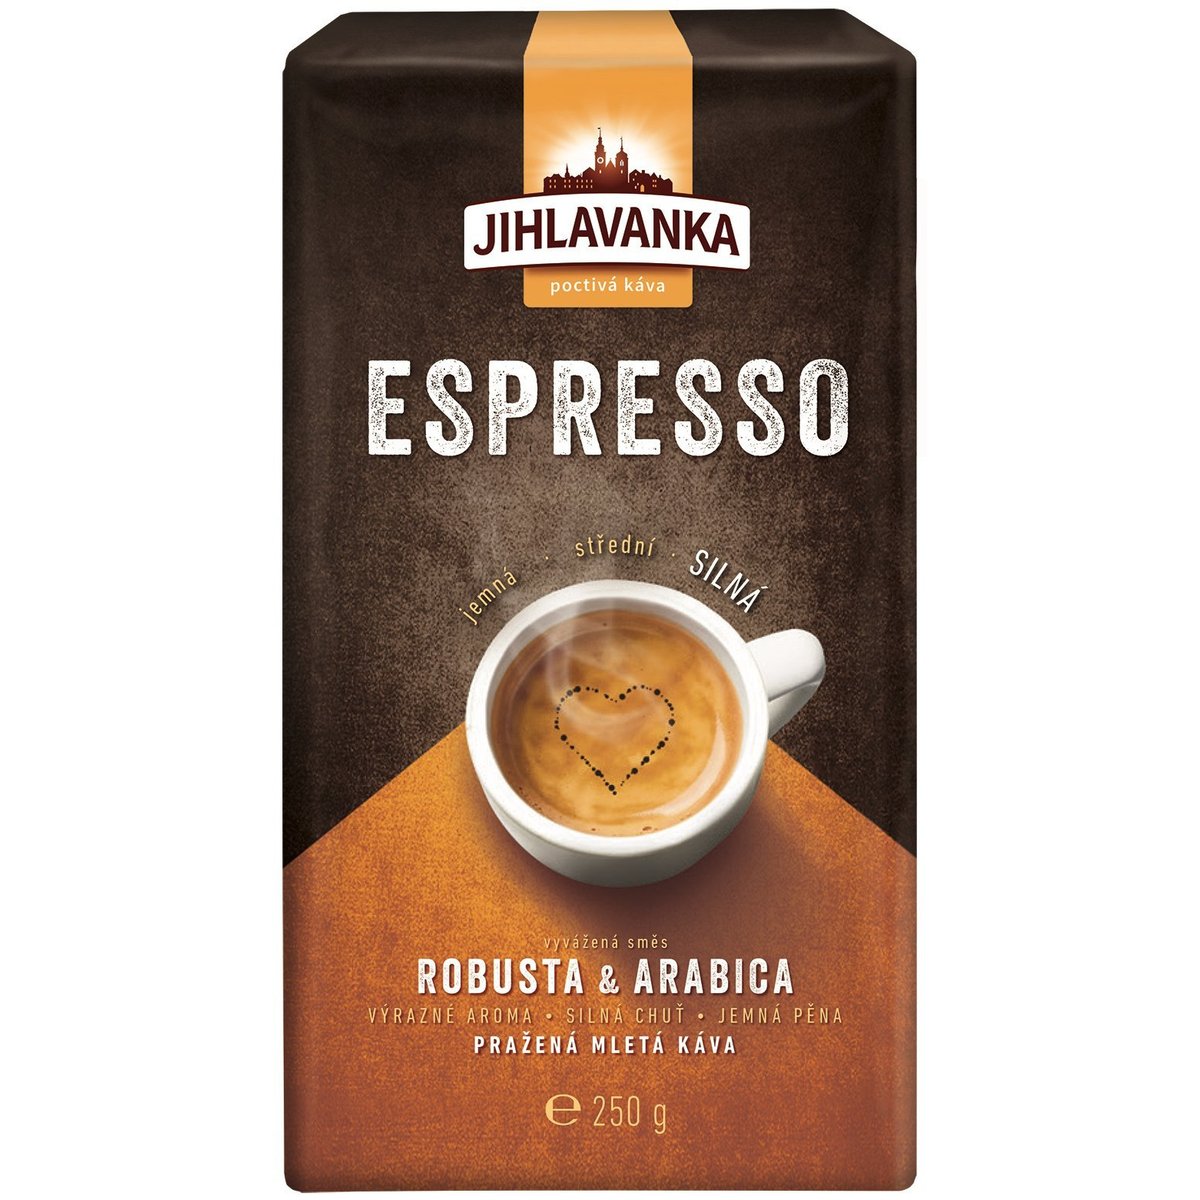 Jihlavanka Espresso pražená mletá káva v akci